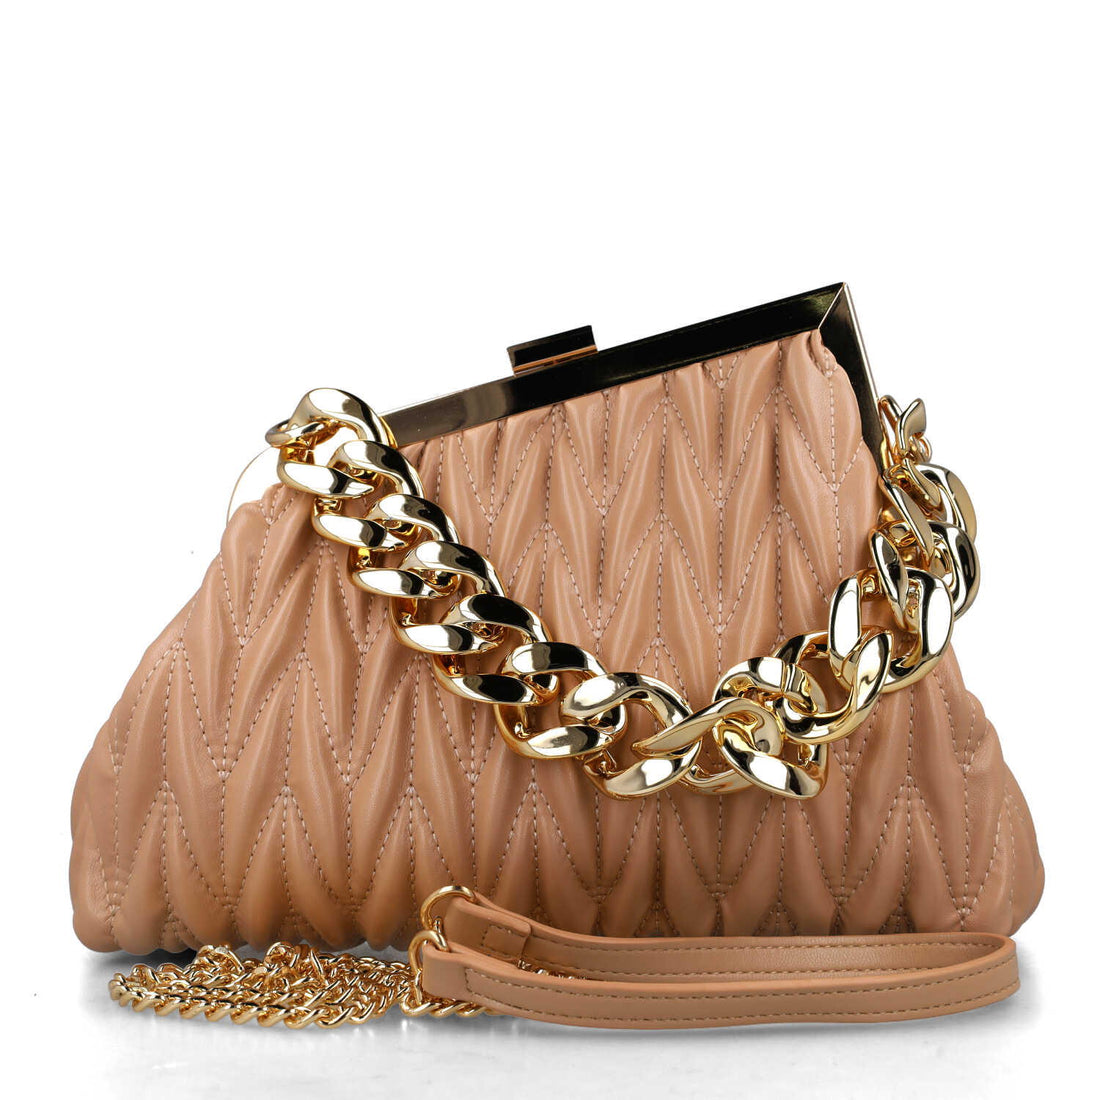 Beige Handbag With Chain Strap_85678_42_01